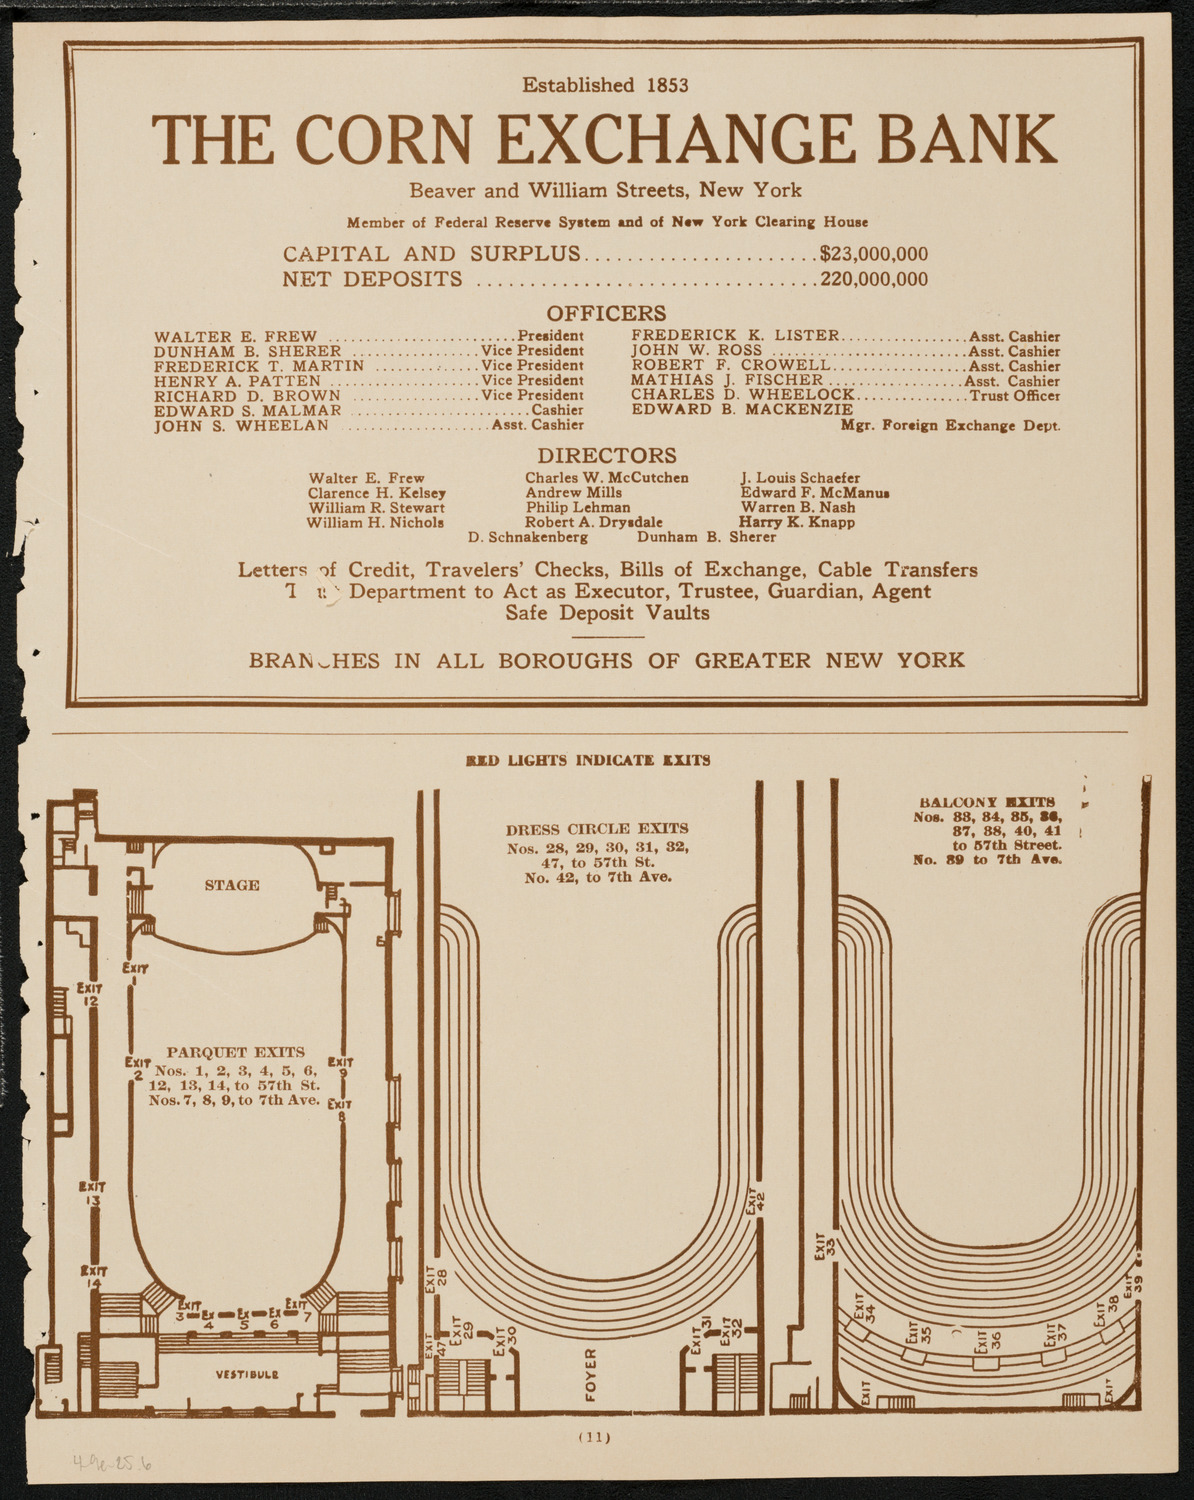 Boston Symphony Orchestra, April 9, 1925, program page 11